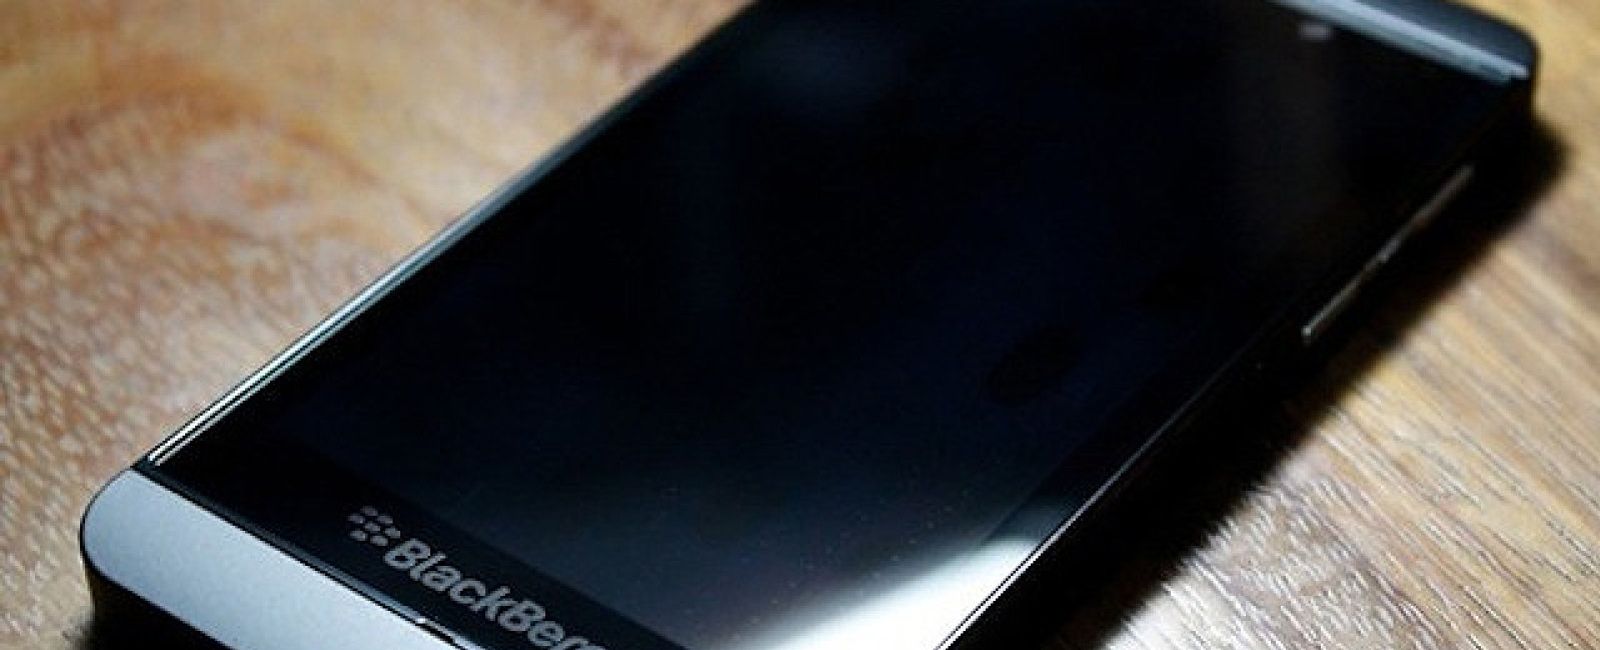 Foto: RIM no se rinde:  así es el hardware de BlackBerry 10